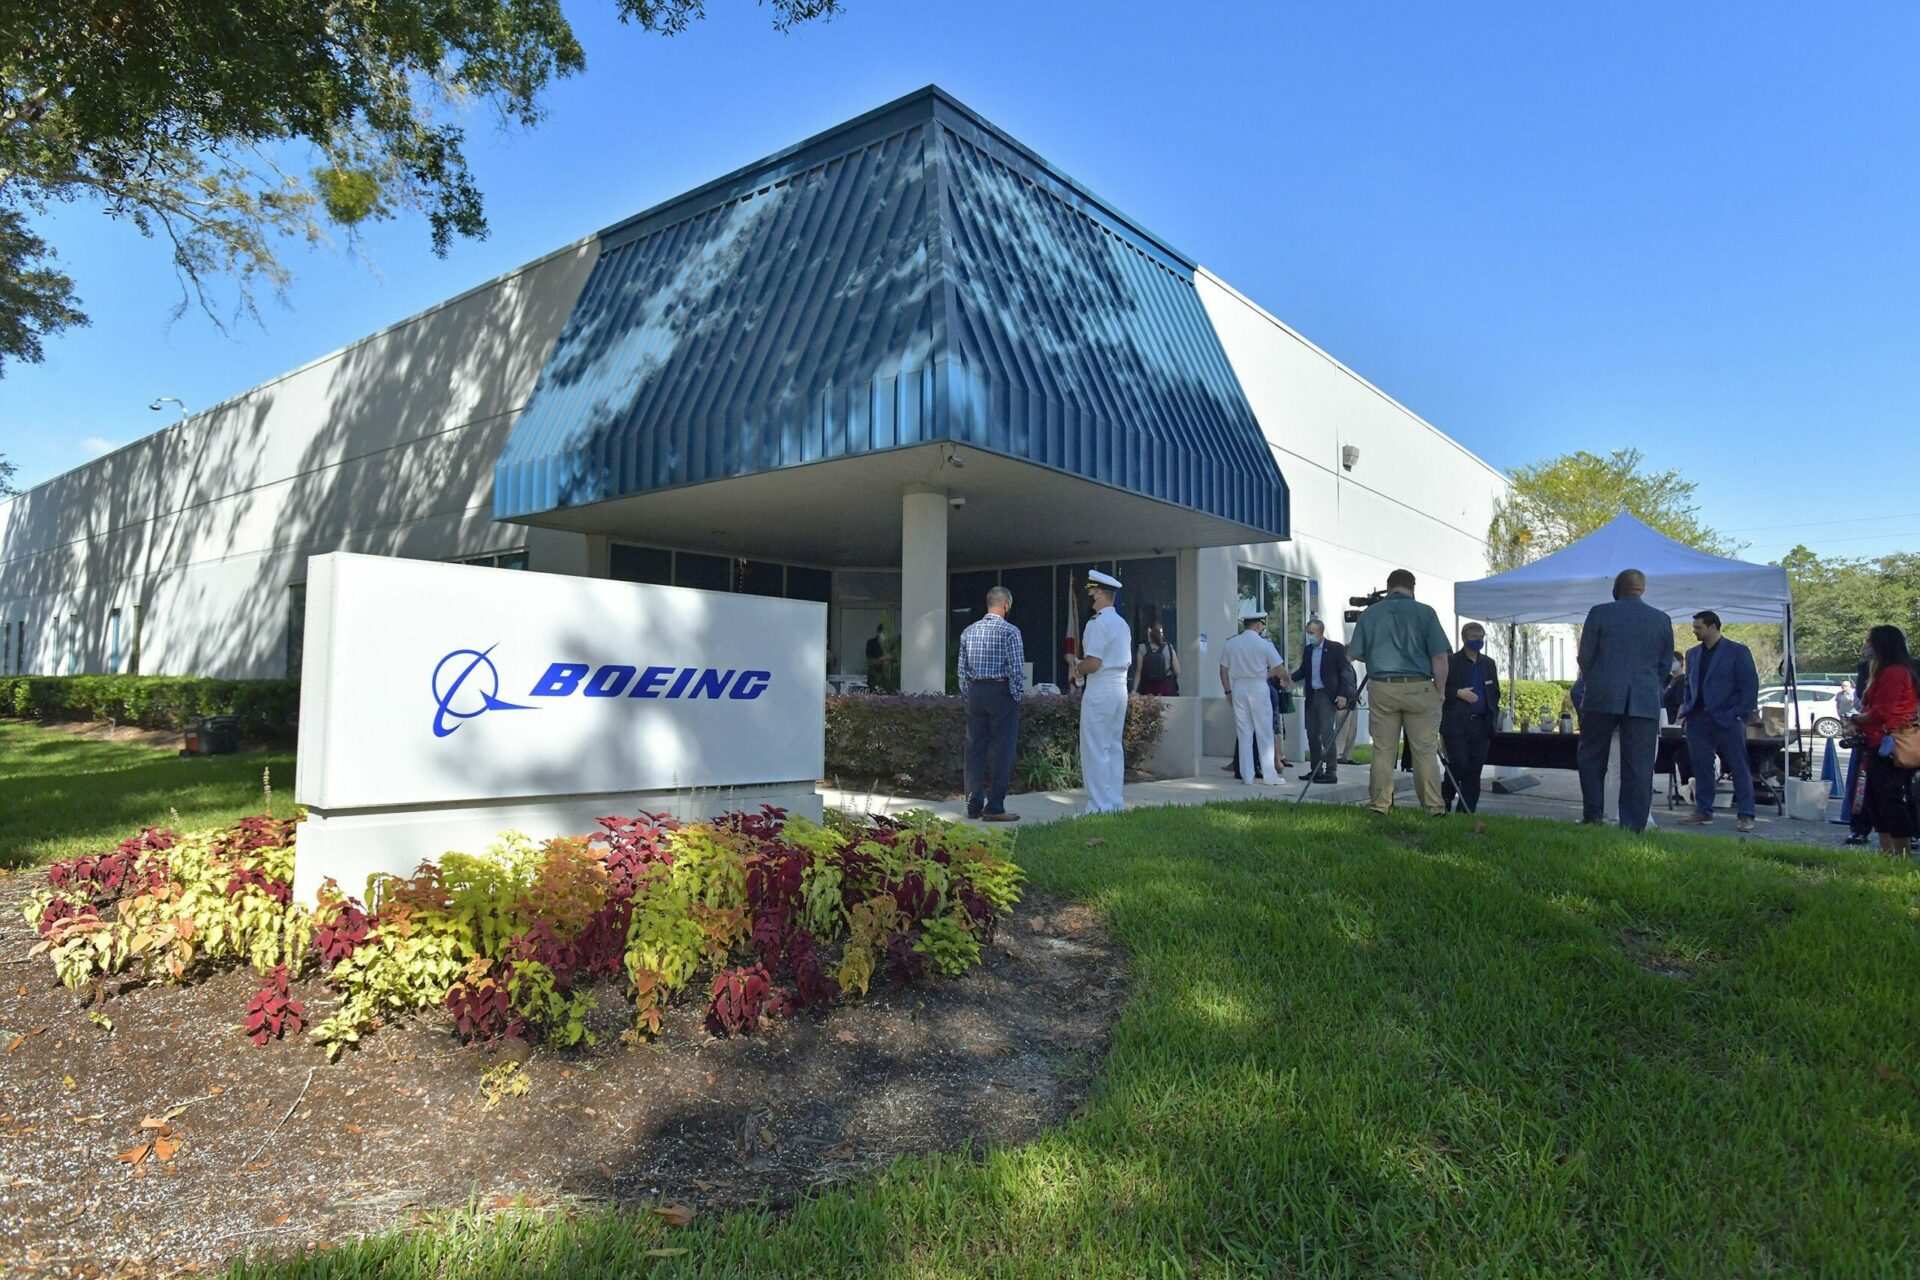 Boeing unveils manufacturing facility in Albuquerque